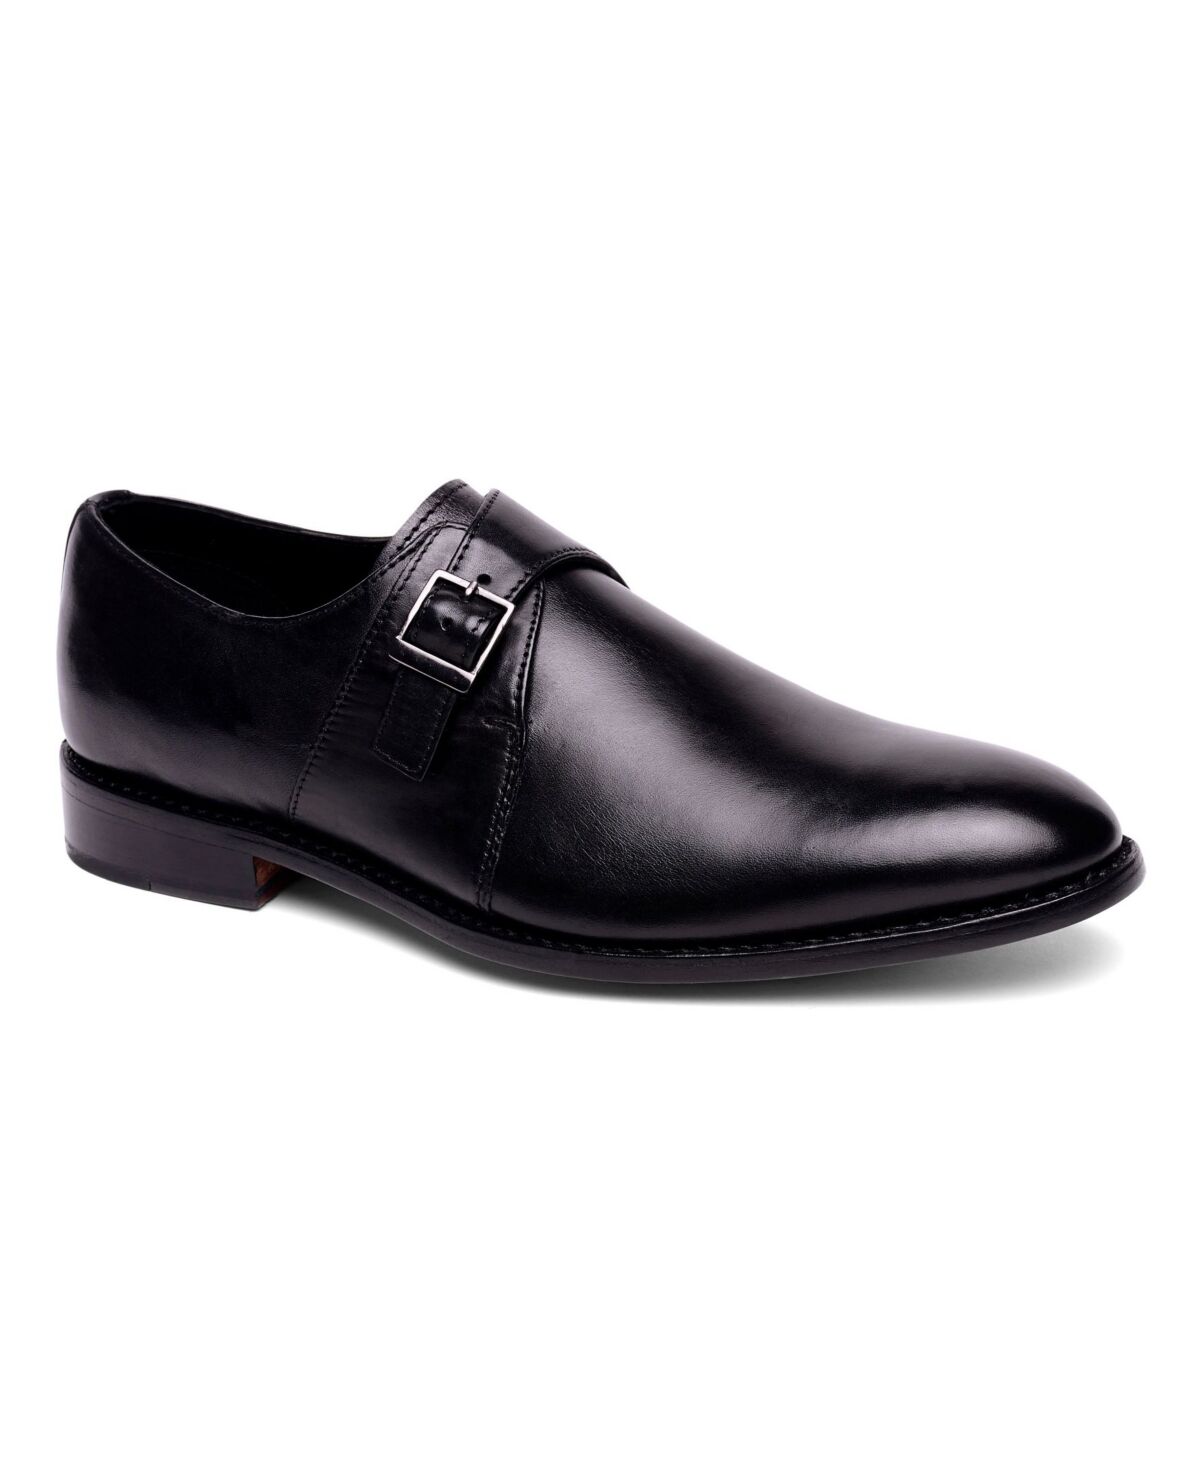 Anthony Veer Men's Roosevelt Single Monk Strap Shoes - Black